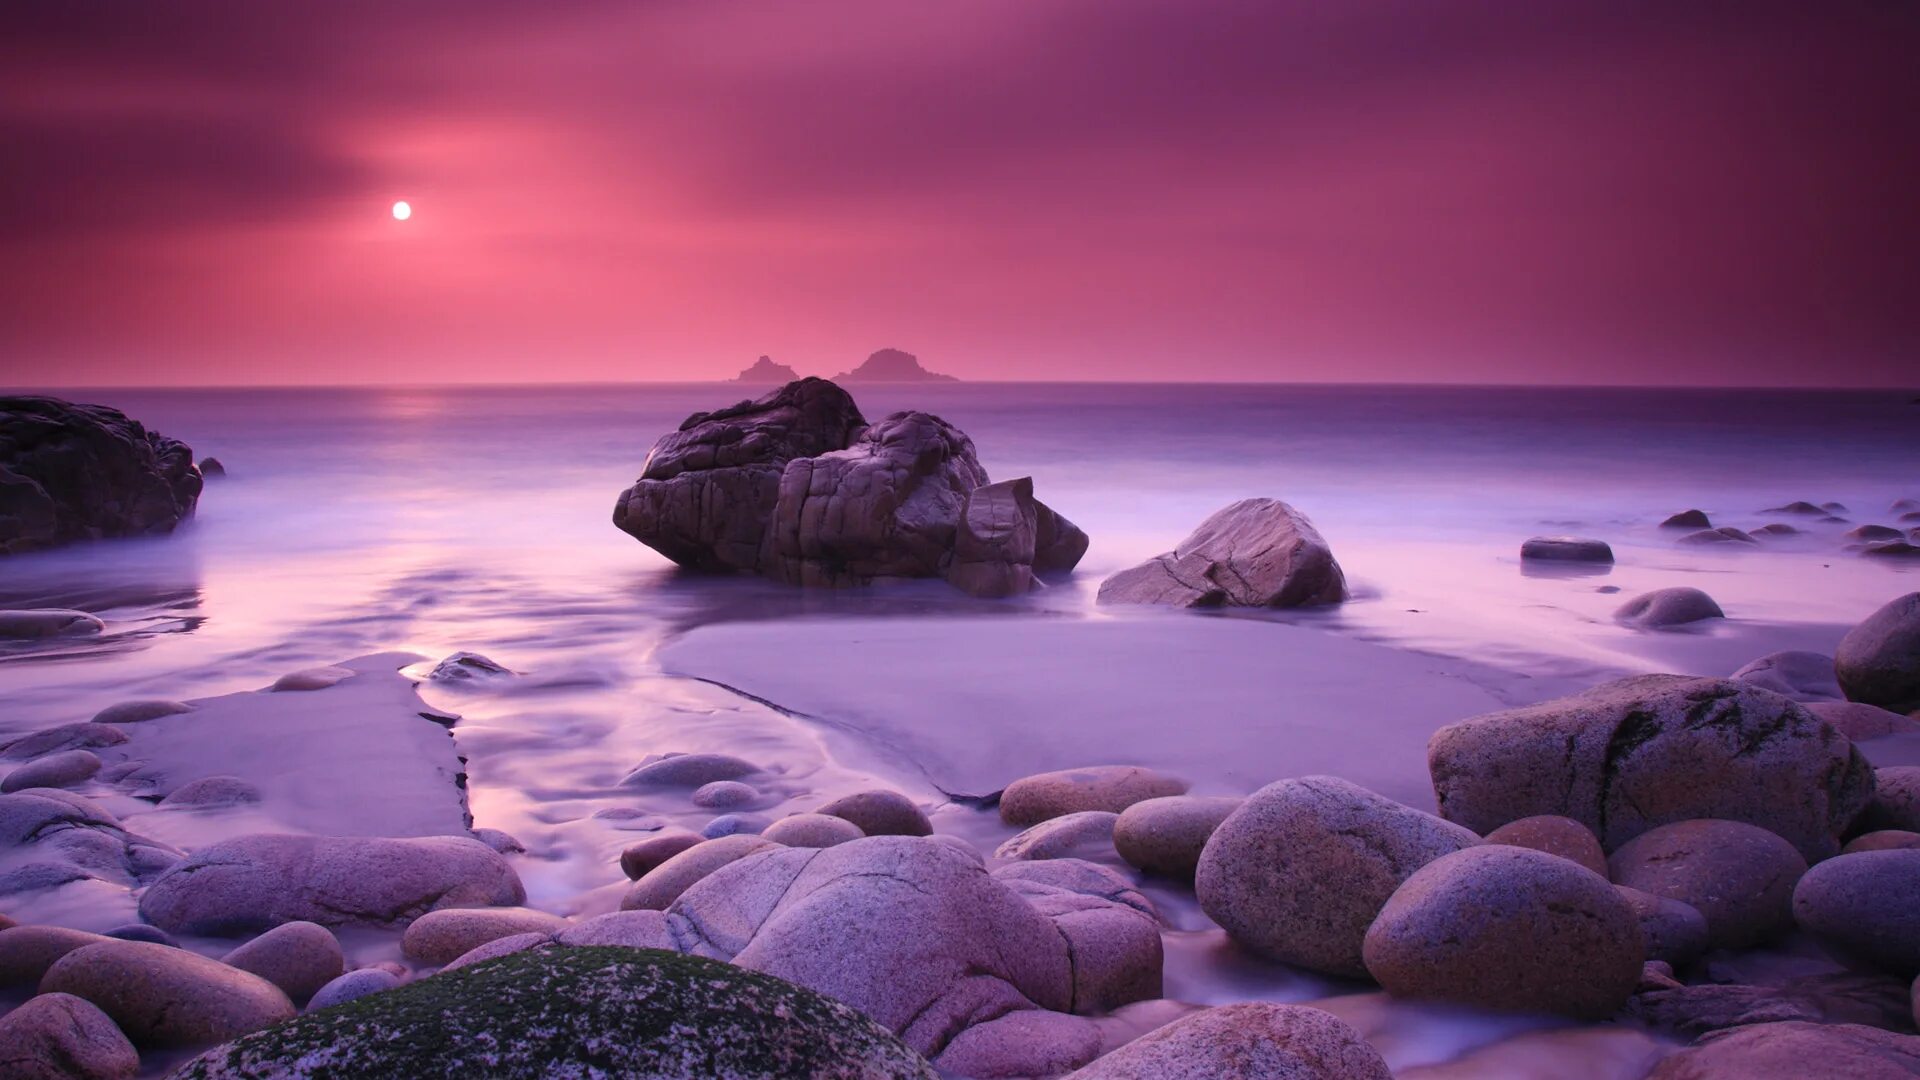 Природа море. Море камни закат. Пейзаж море. Картинки на заставку компьютера. Очень много обой